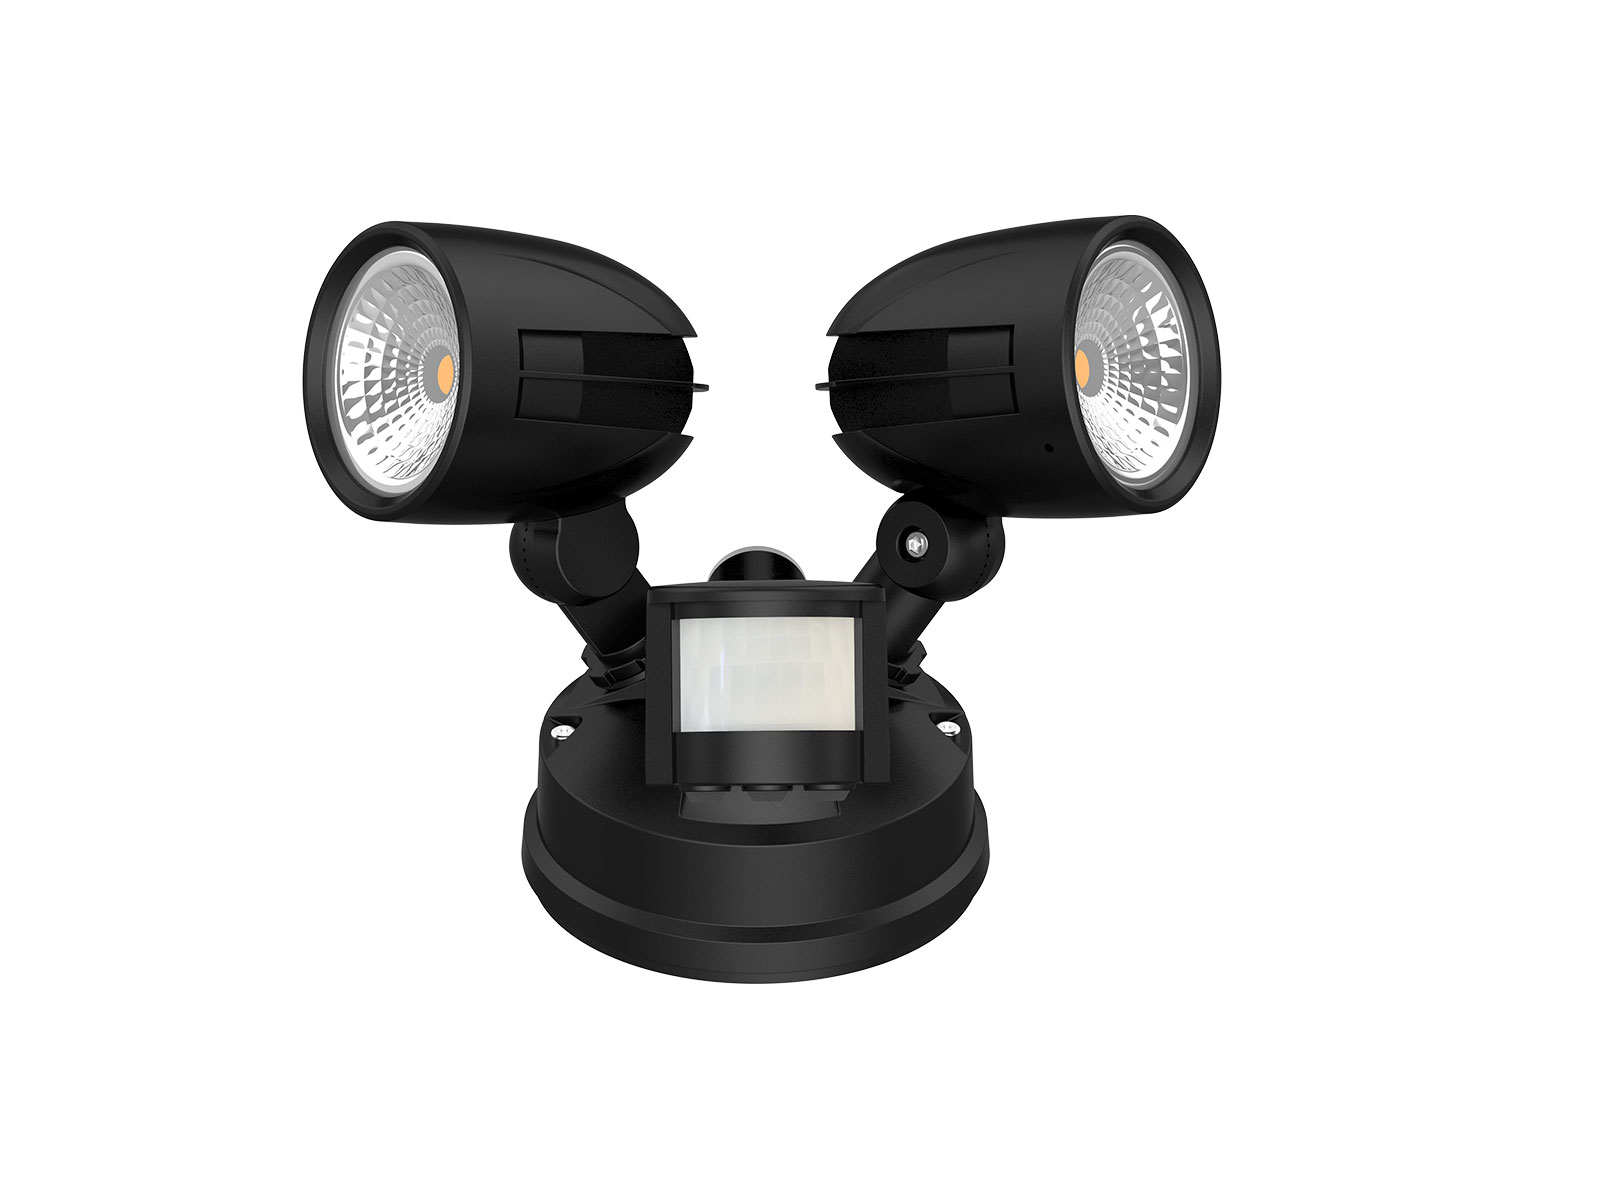 Wl62 Pir Sensor Wall Light Upshine, Best Outdoor Spot Light Pir